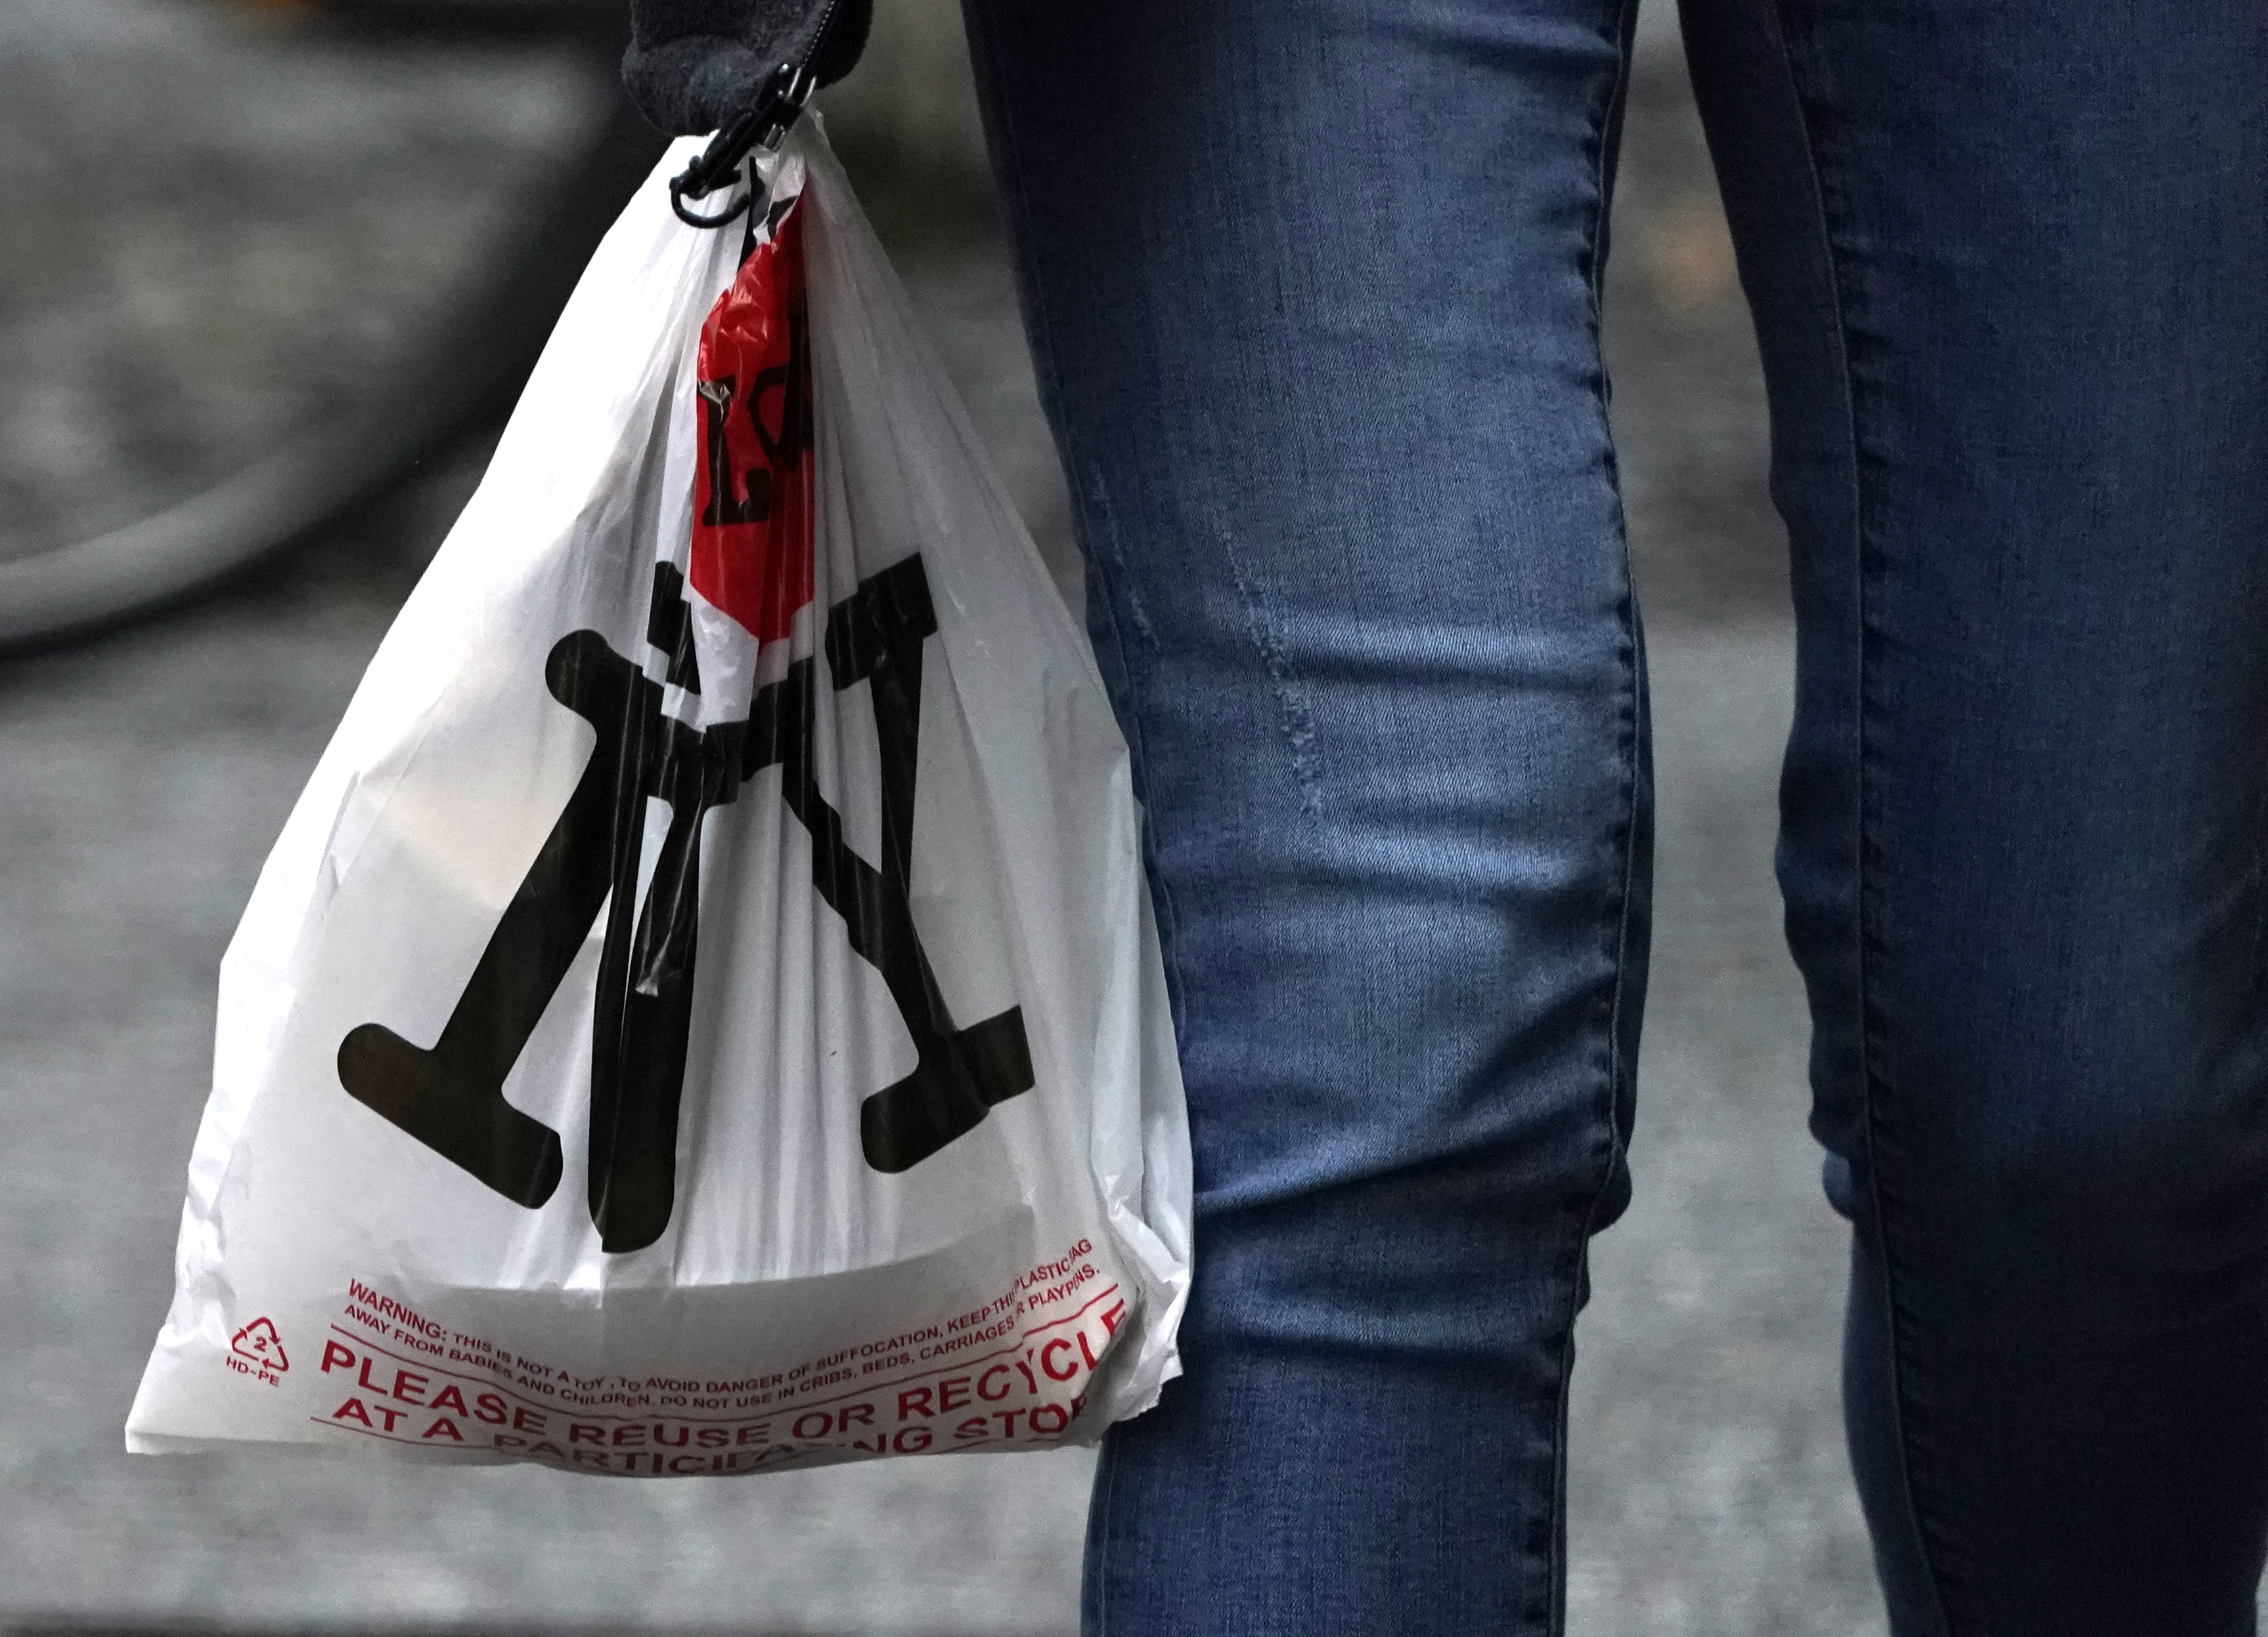 塑料袋禁令實行五個月 新州議員考慮修法